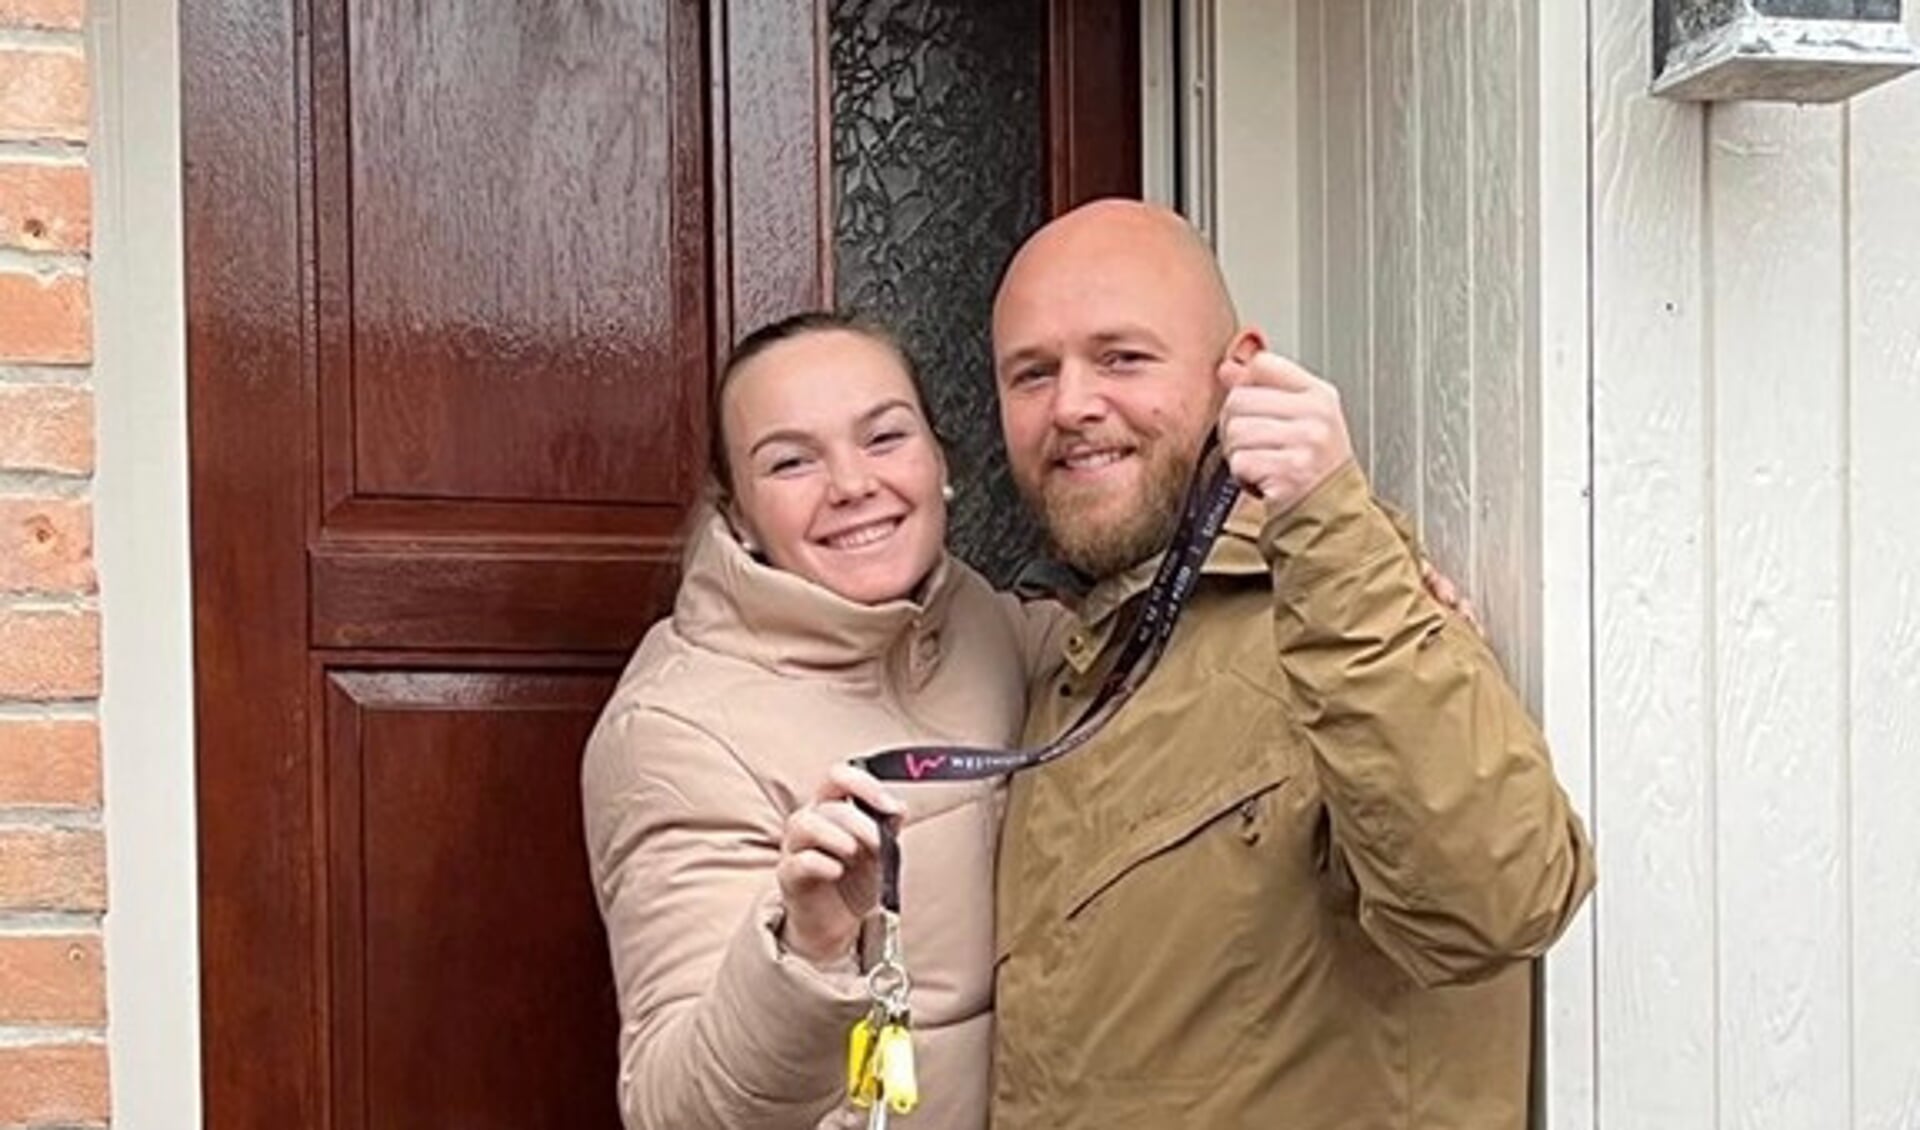  Michelle Meyer en Yoeri van Bergen voor de deur van hun nieuwe woning.